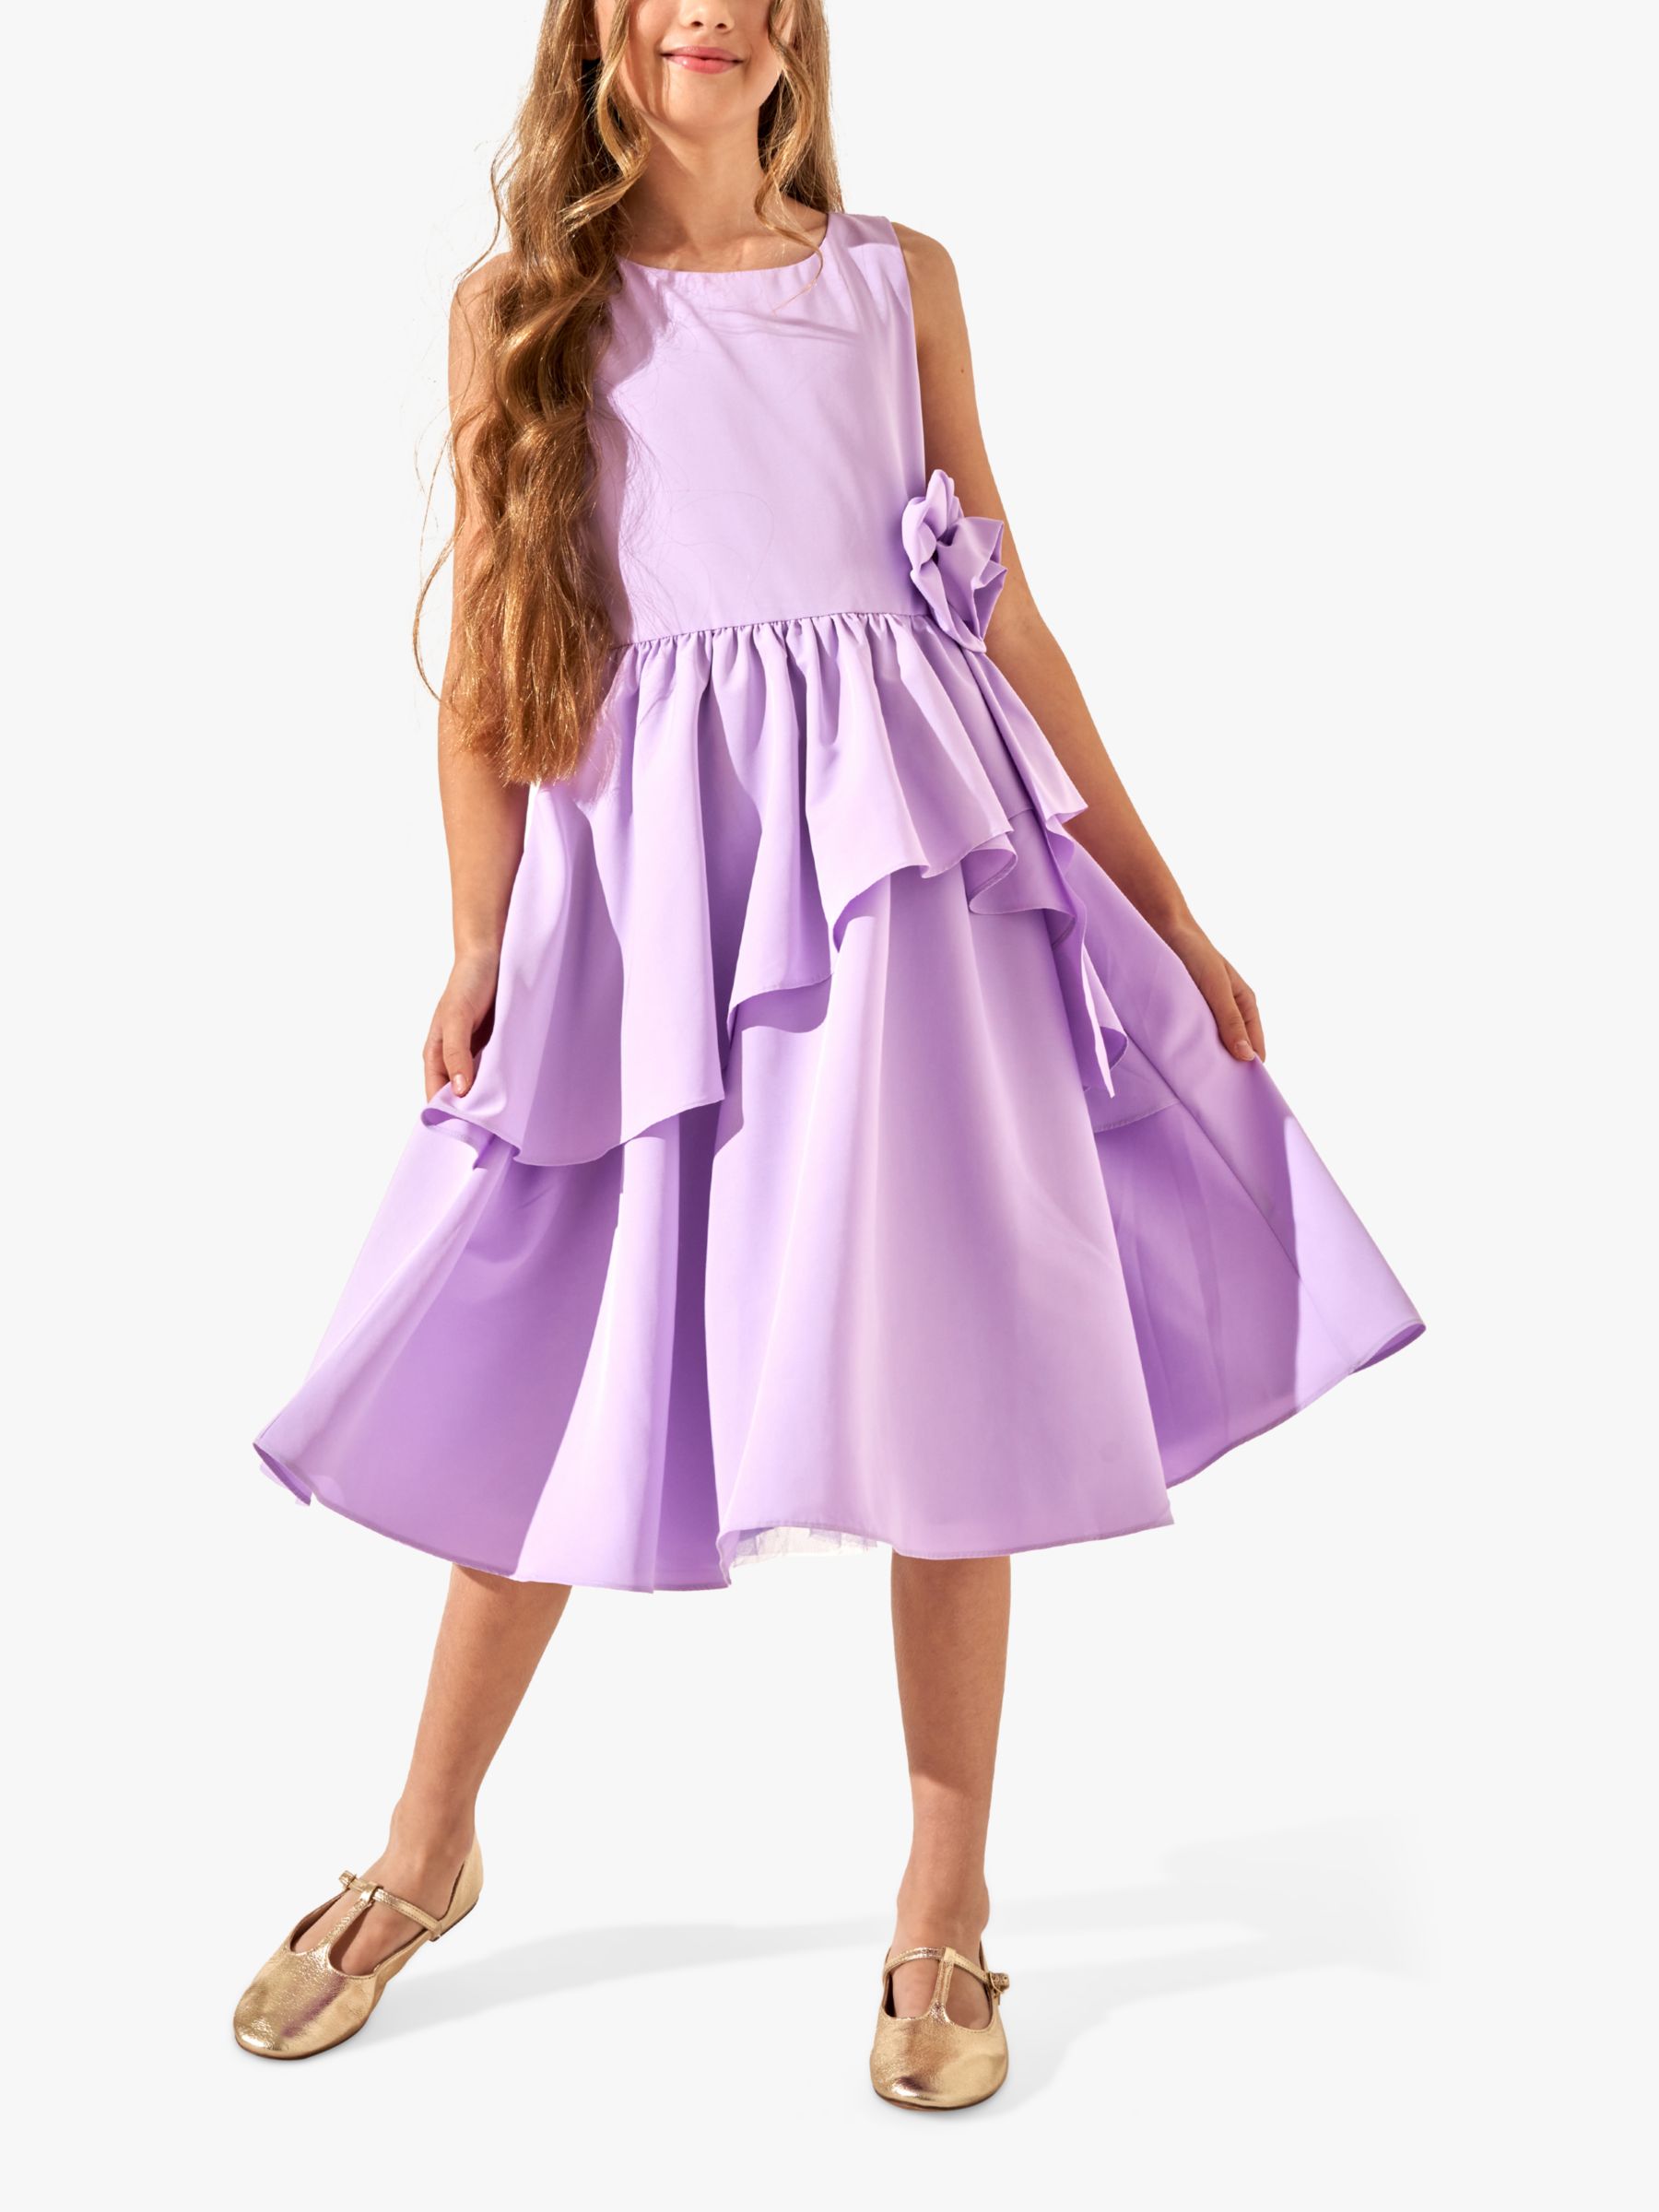 Angel & Rocket Kids' Lourdes Corsage Waist Occasion Dress, Purple, 14 years